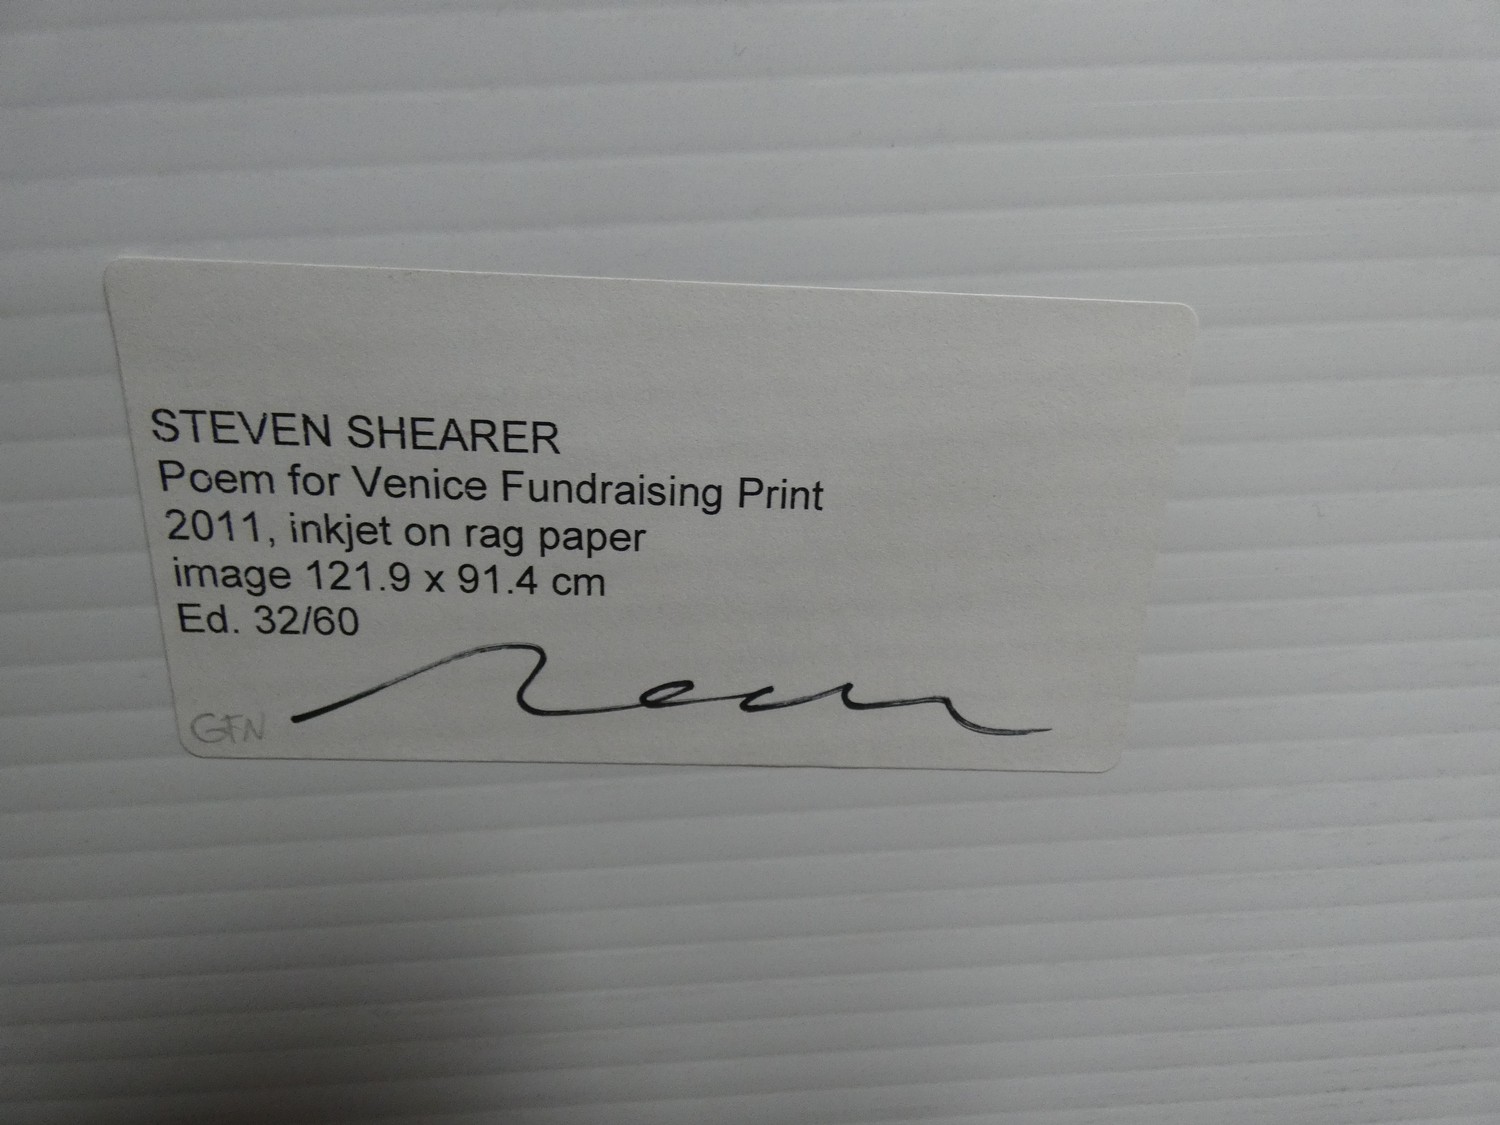 An inkjet on rag paper print by Canadian artist Steven Shearer, Poem for Venice Fundraising, 32/ - Image 5 of 5